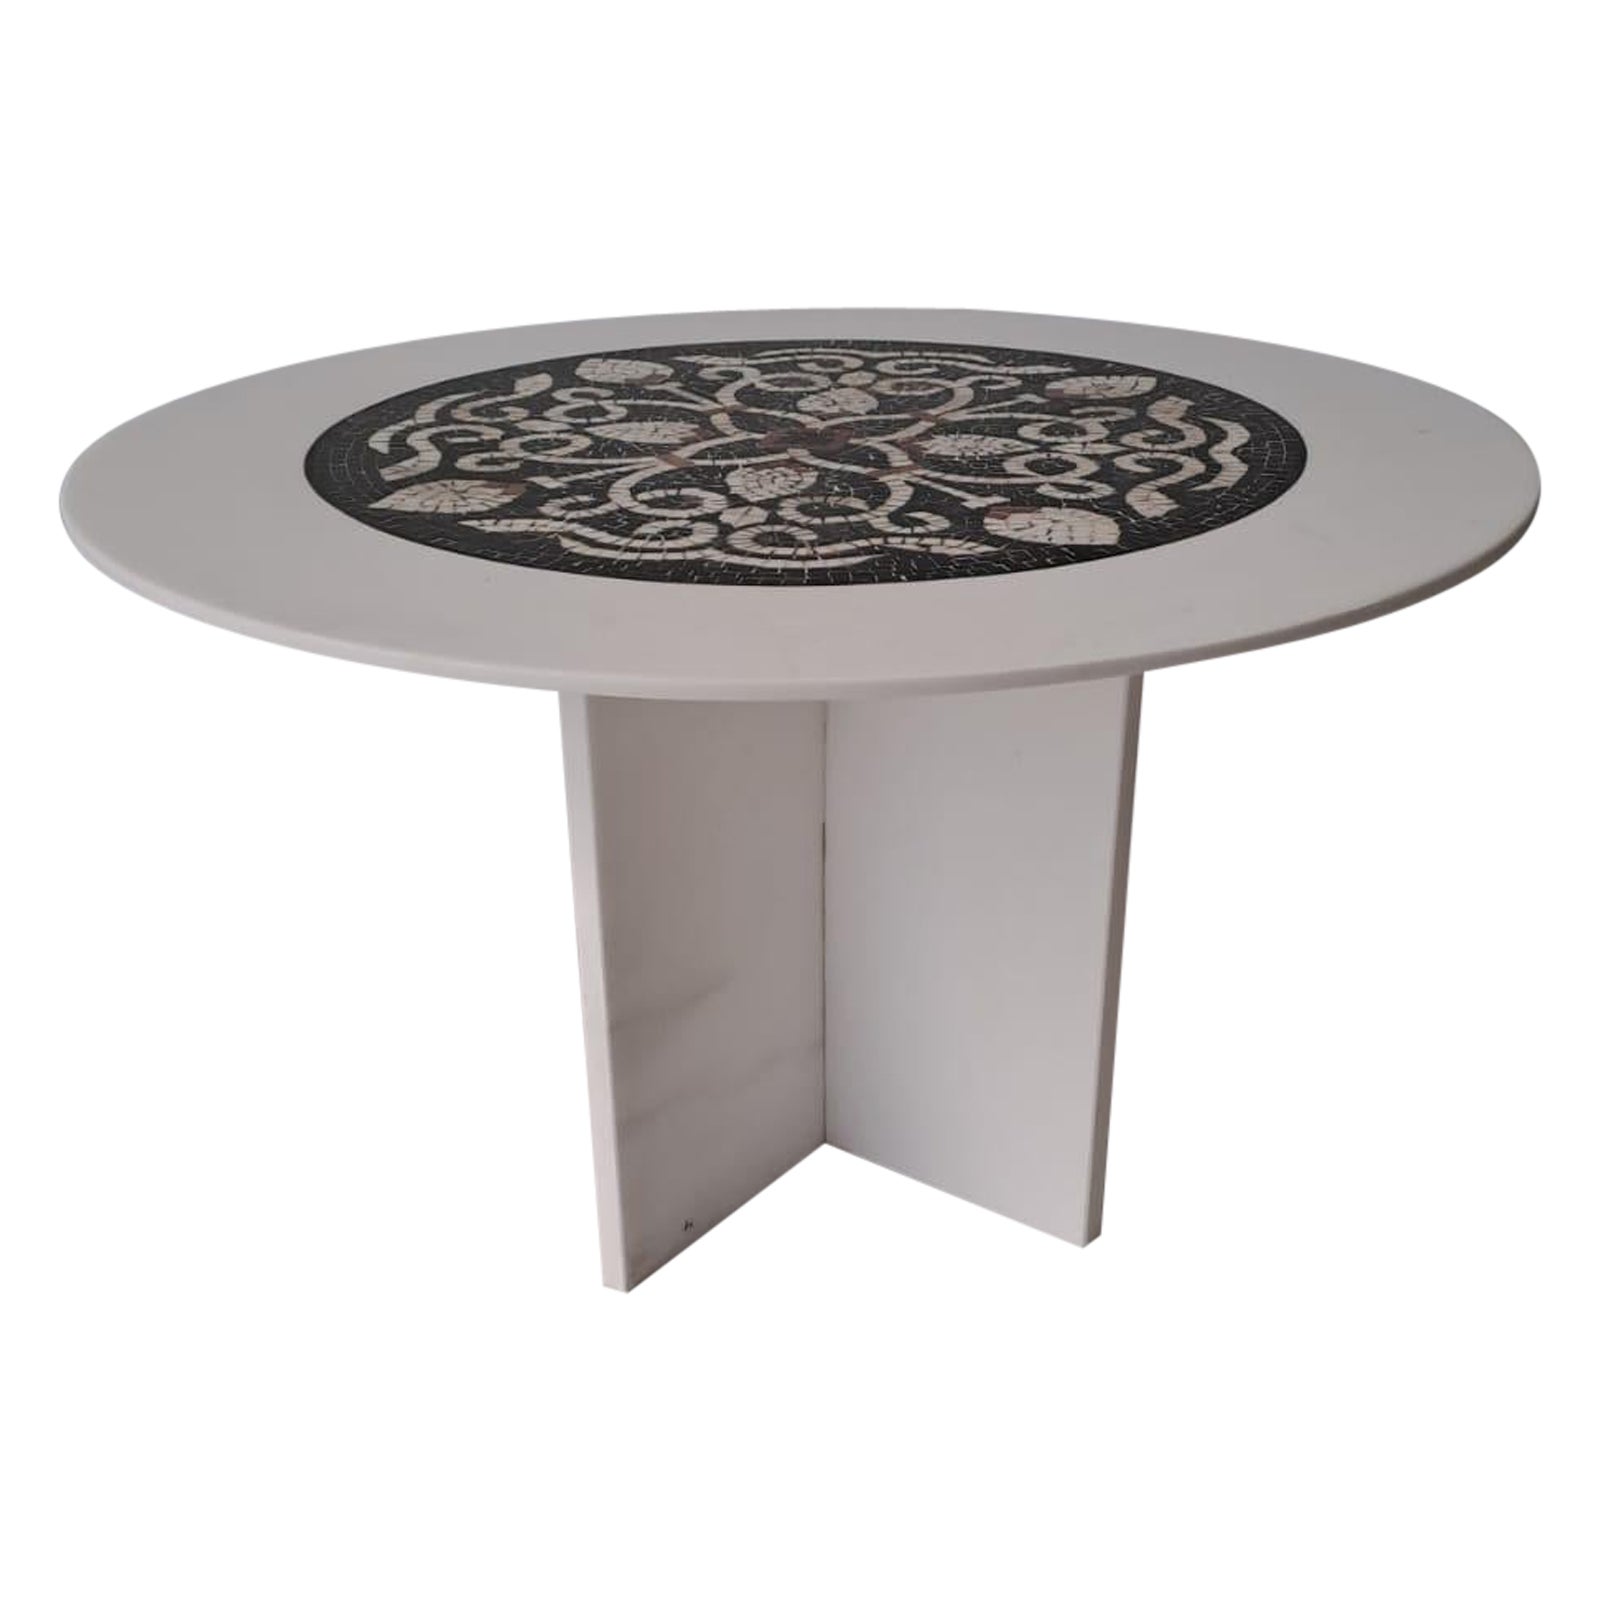 La table basse Maze est faite de l'exquis marbre grec de Thasos et d'un plateau en mosaïque de marbre. Cette table basse est un meuble luxueux et accrocheur qui allie la beauté intemporelle de la pierre naturelle à un savoir-faire artisanal